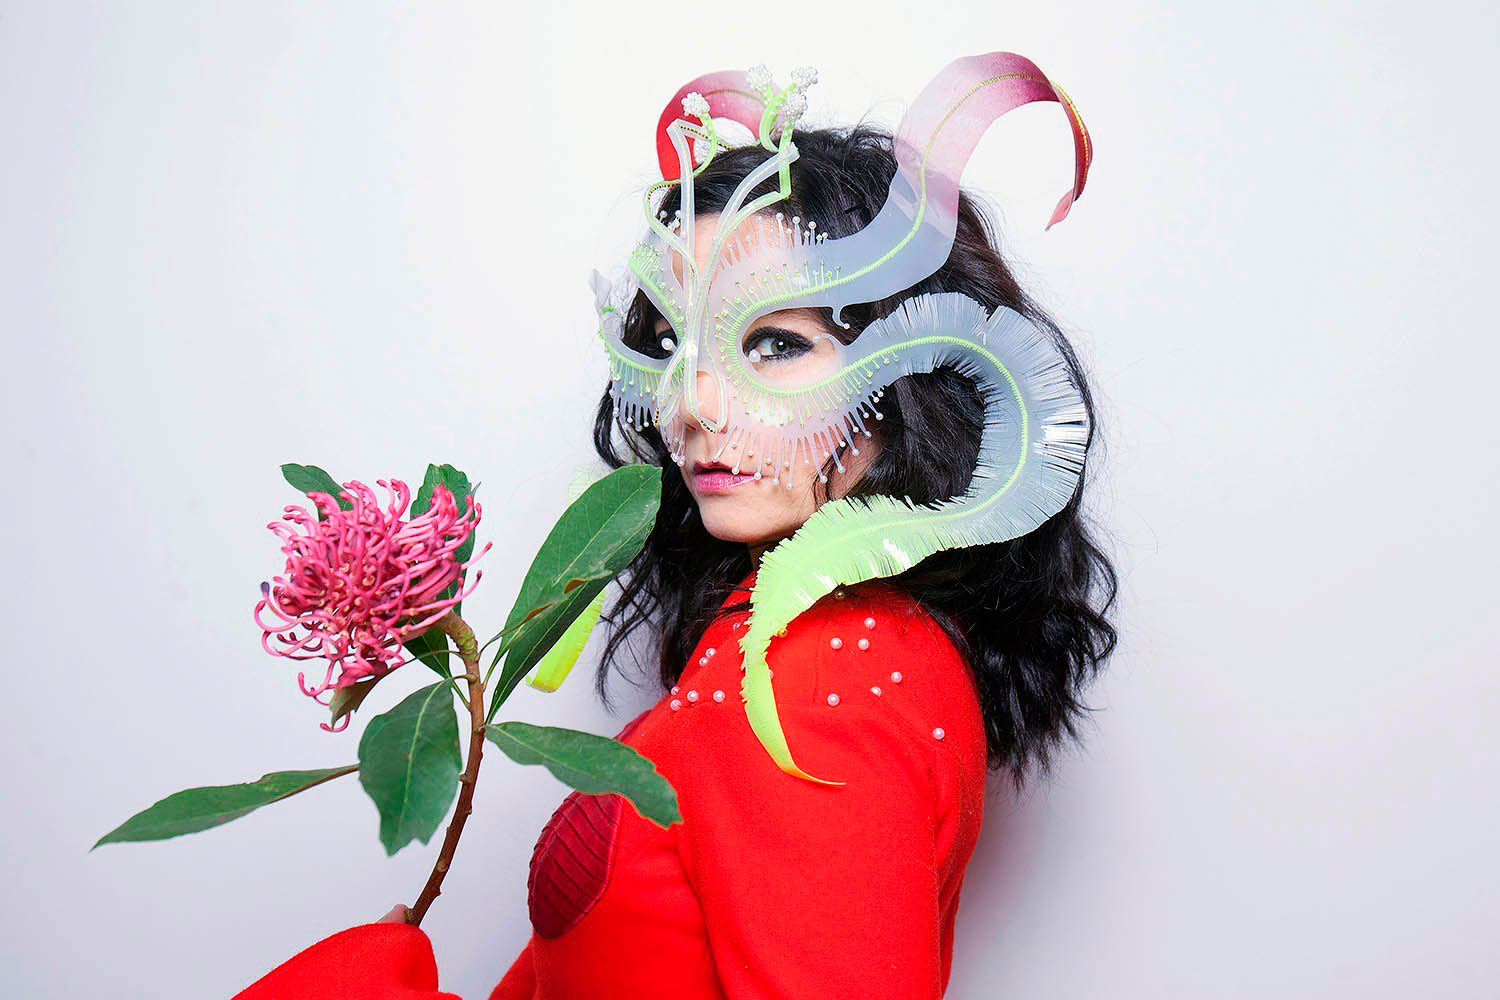 Exposição “Björk Digital”, da cantora islandesa, chega à São Paulo em junho; saiba detalhes